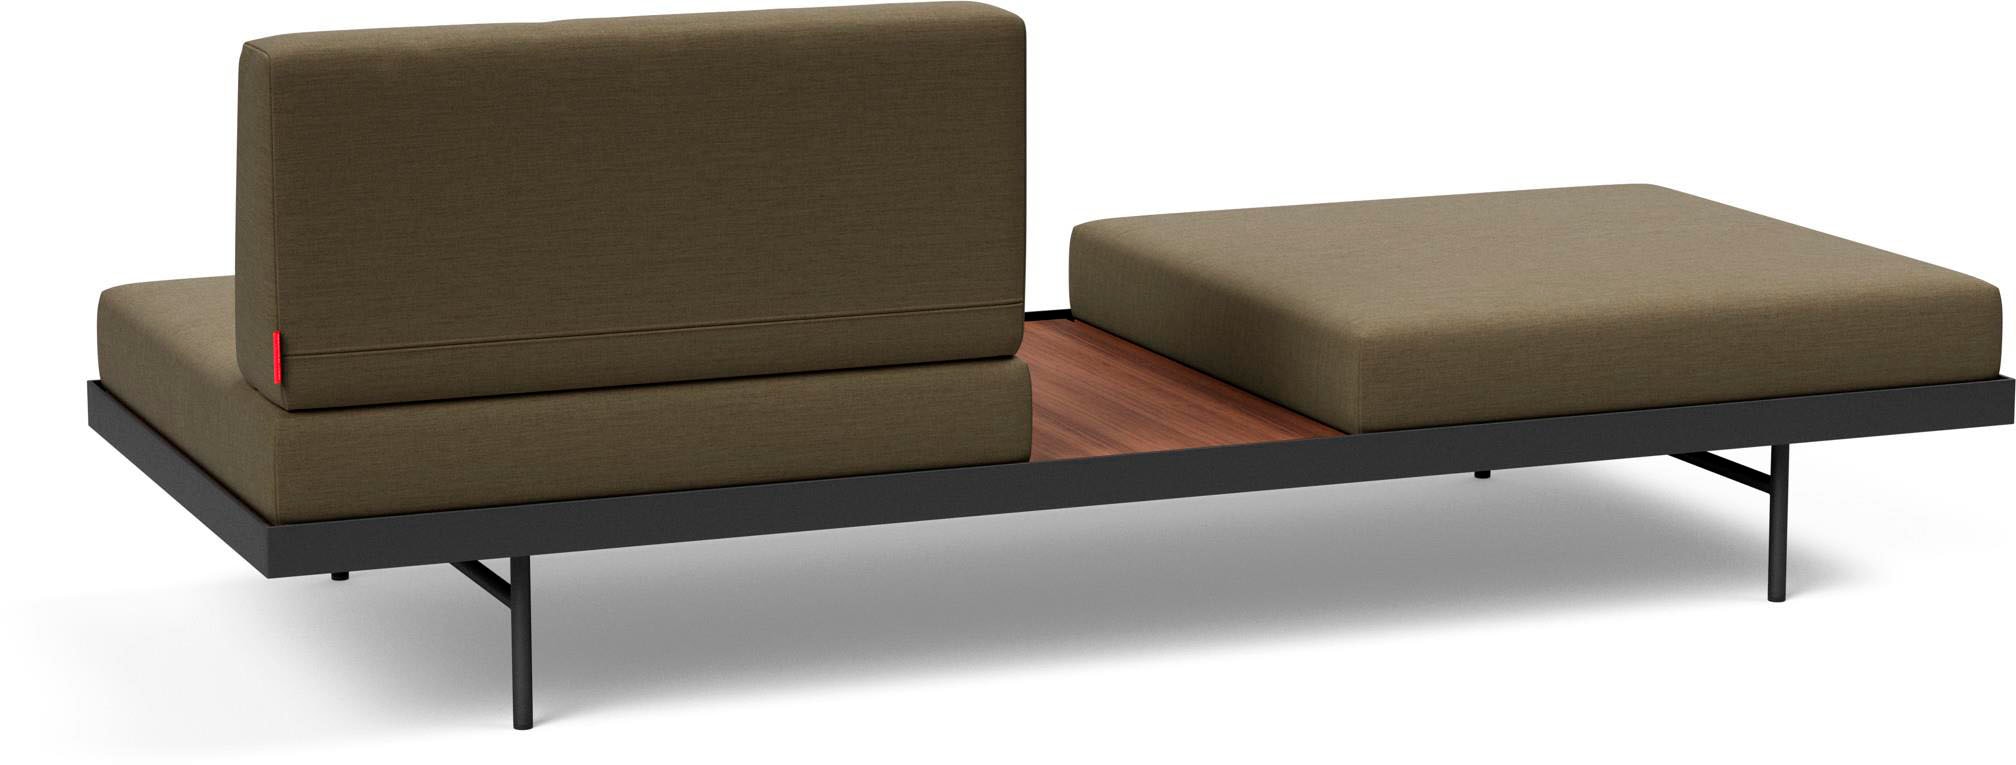 INNOVATION LIVING ™ Relaxliege »PURI«, Daybed mit integrierter Holzablage, flexible Aufteilung